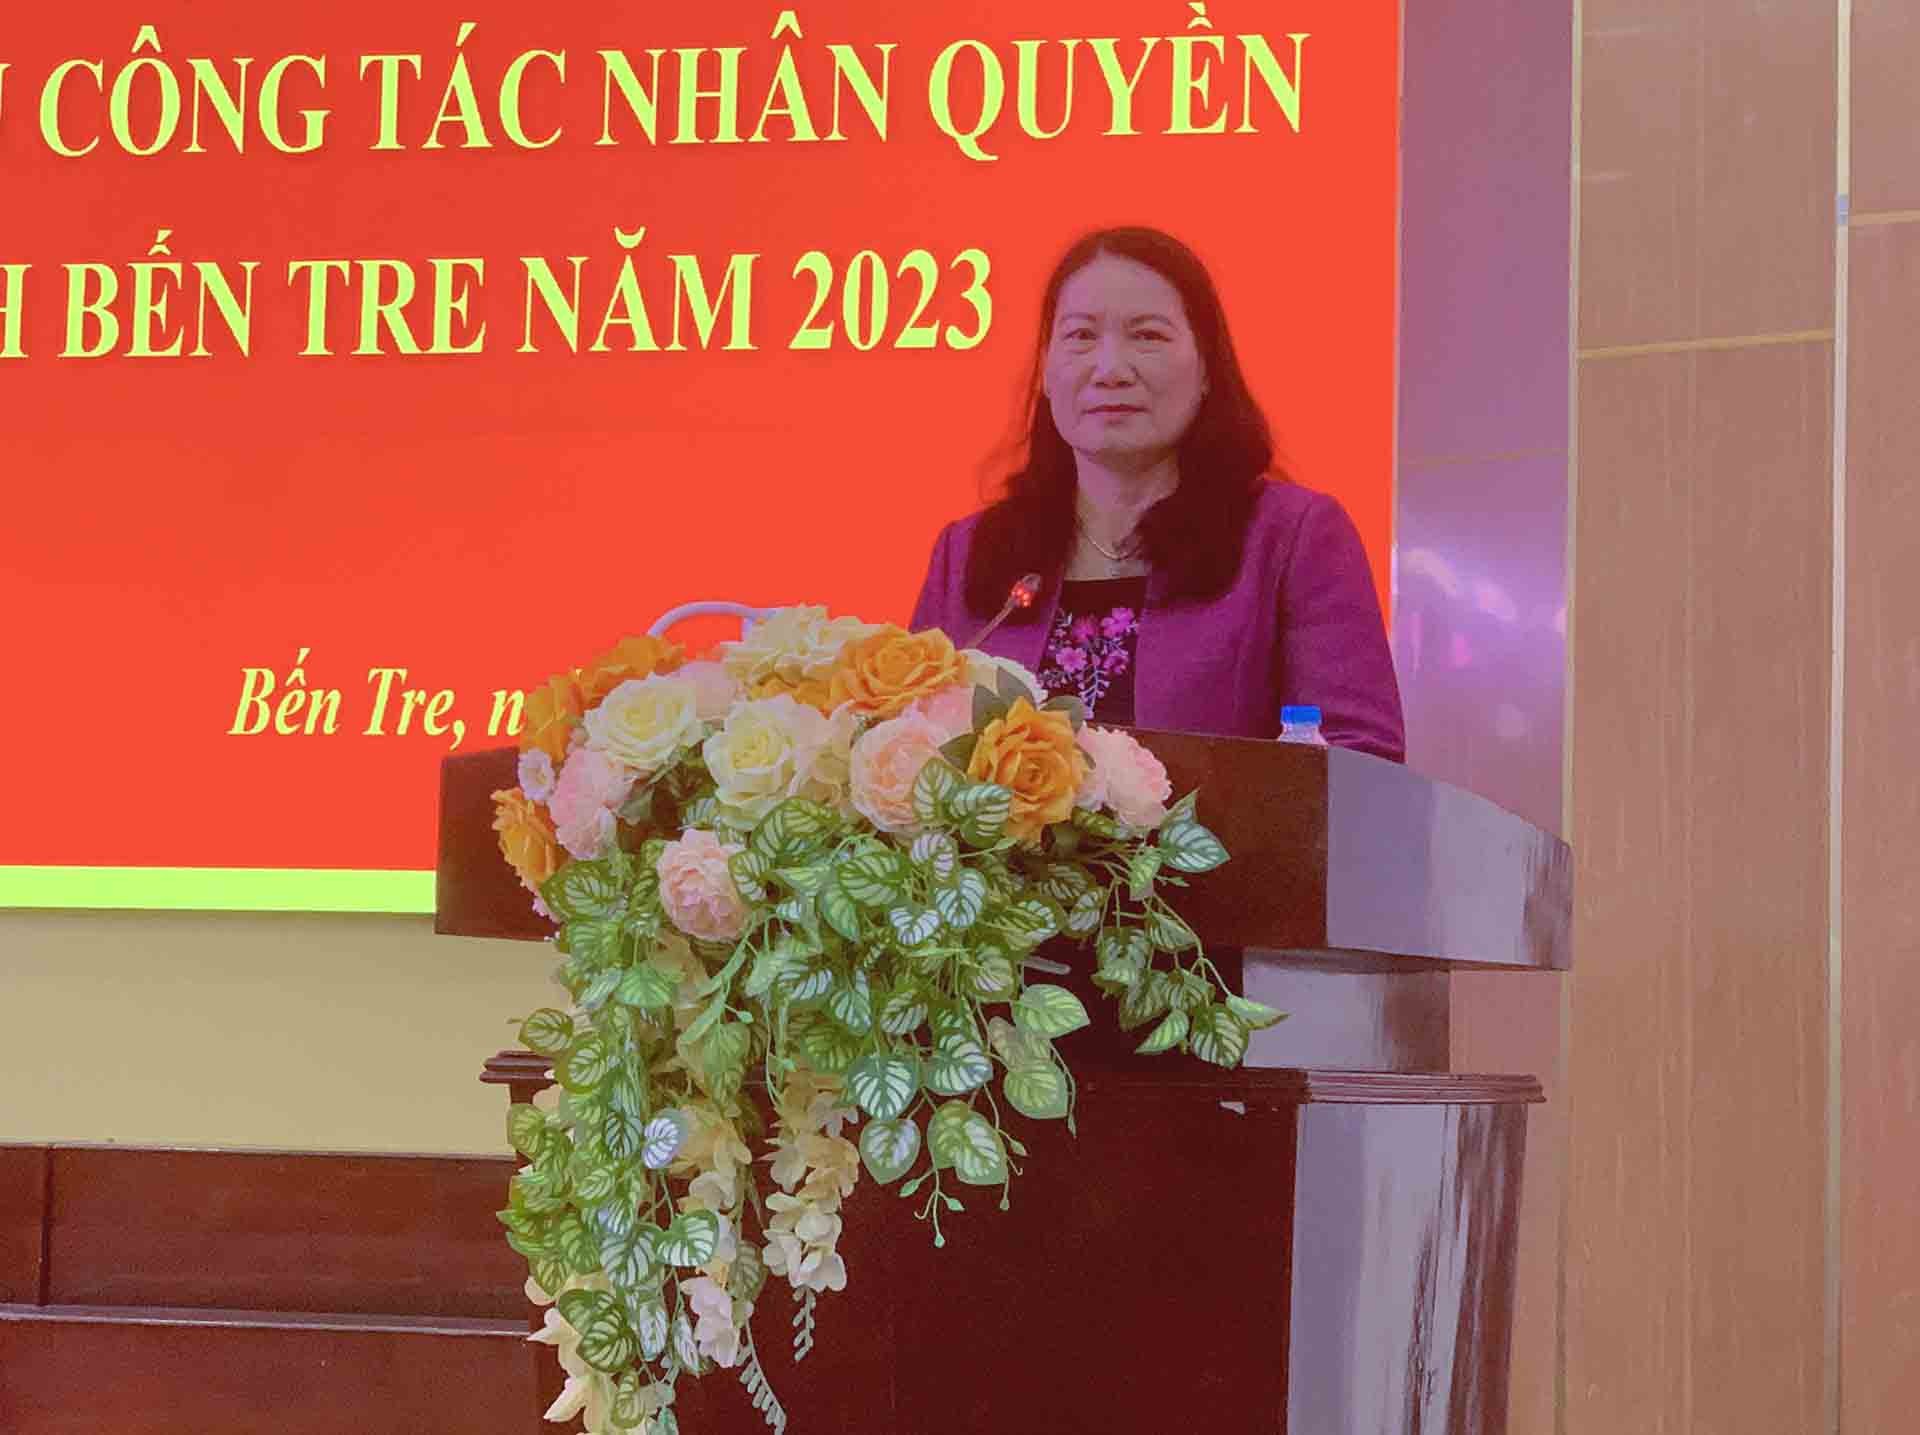 Đồng chí Nguyễn Thị Bé Mười, Phó Chủ tịch UBND tỉnh, Trưởng Ban Chỉ đạo về Nhân quyền tỉnh Bến Tre phát biểu.